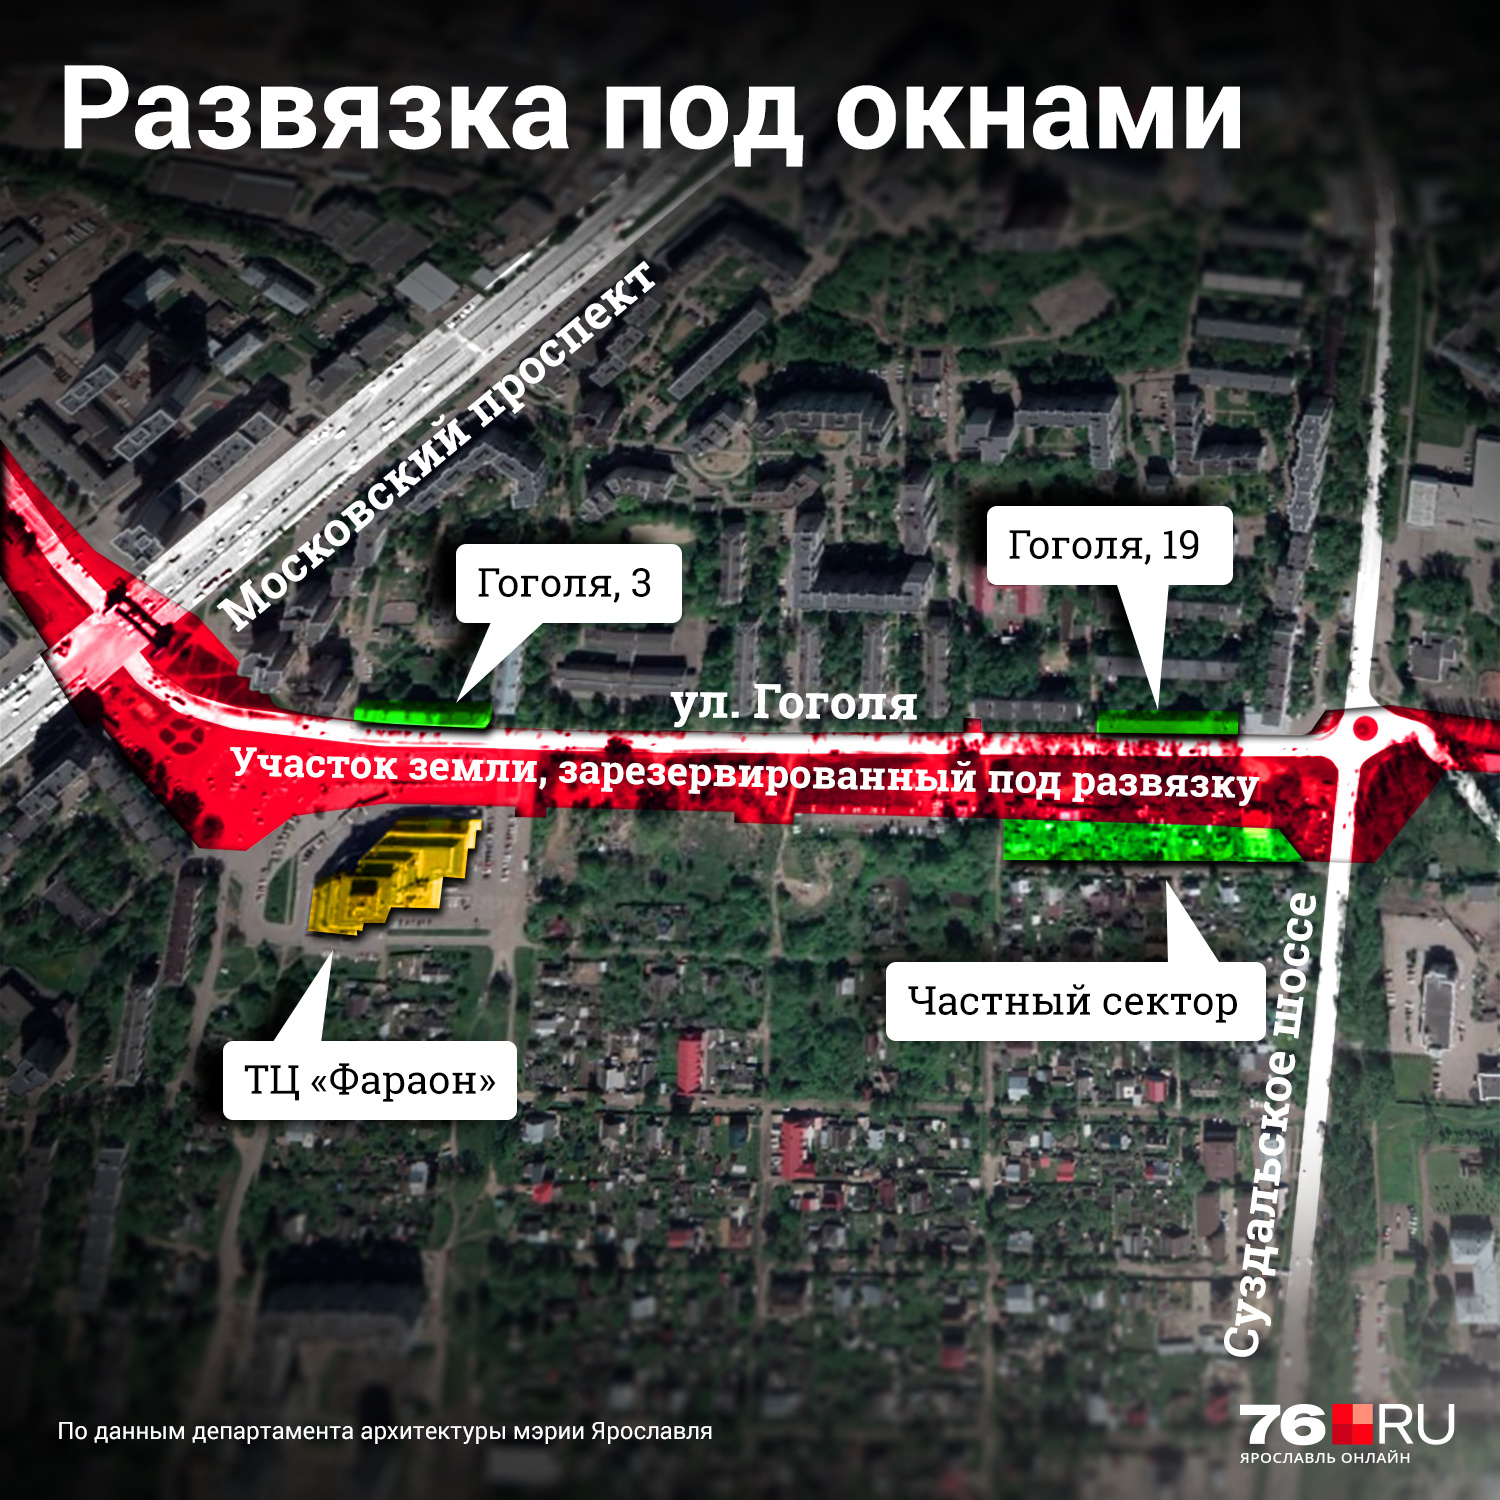 Карабулинская развязка в Ярославле: карта проекта - 4 марта 2021 - 76.ru